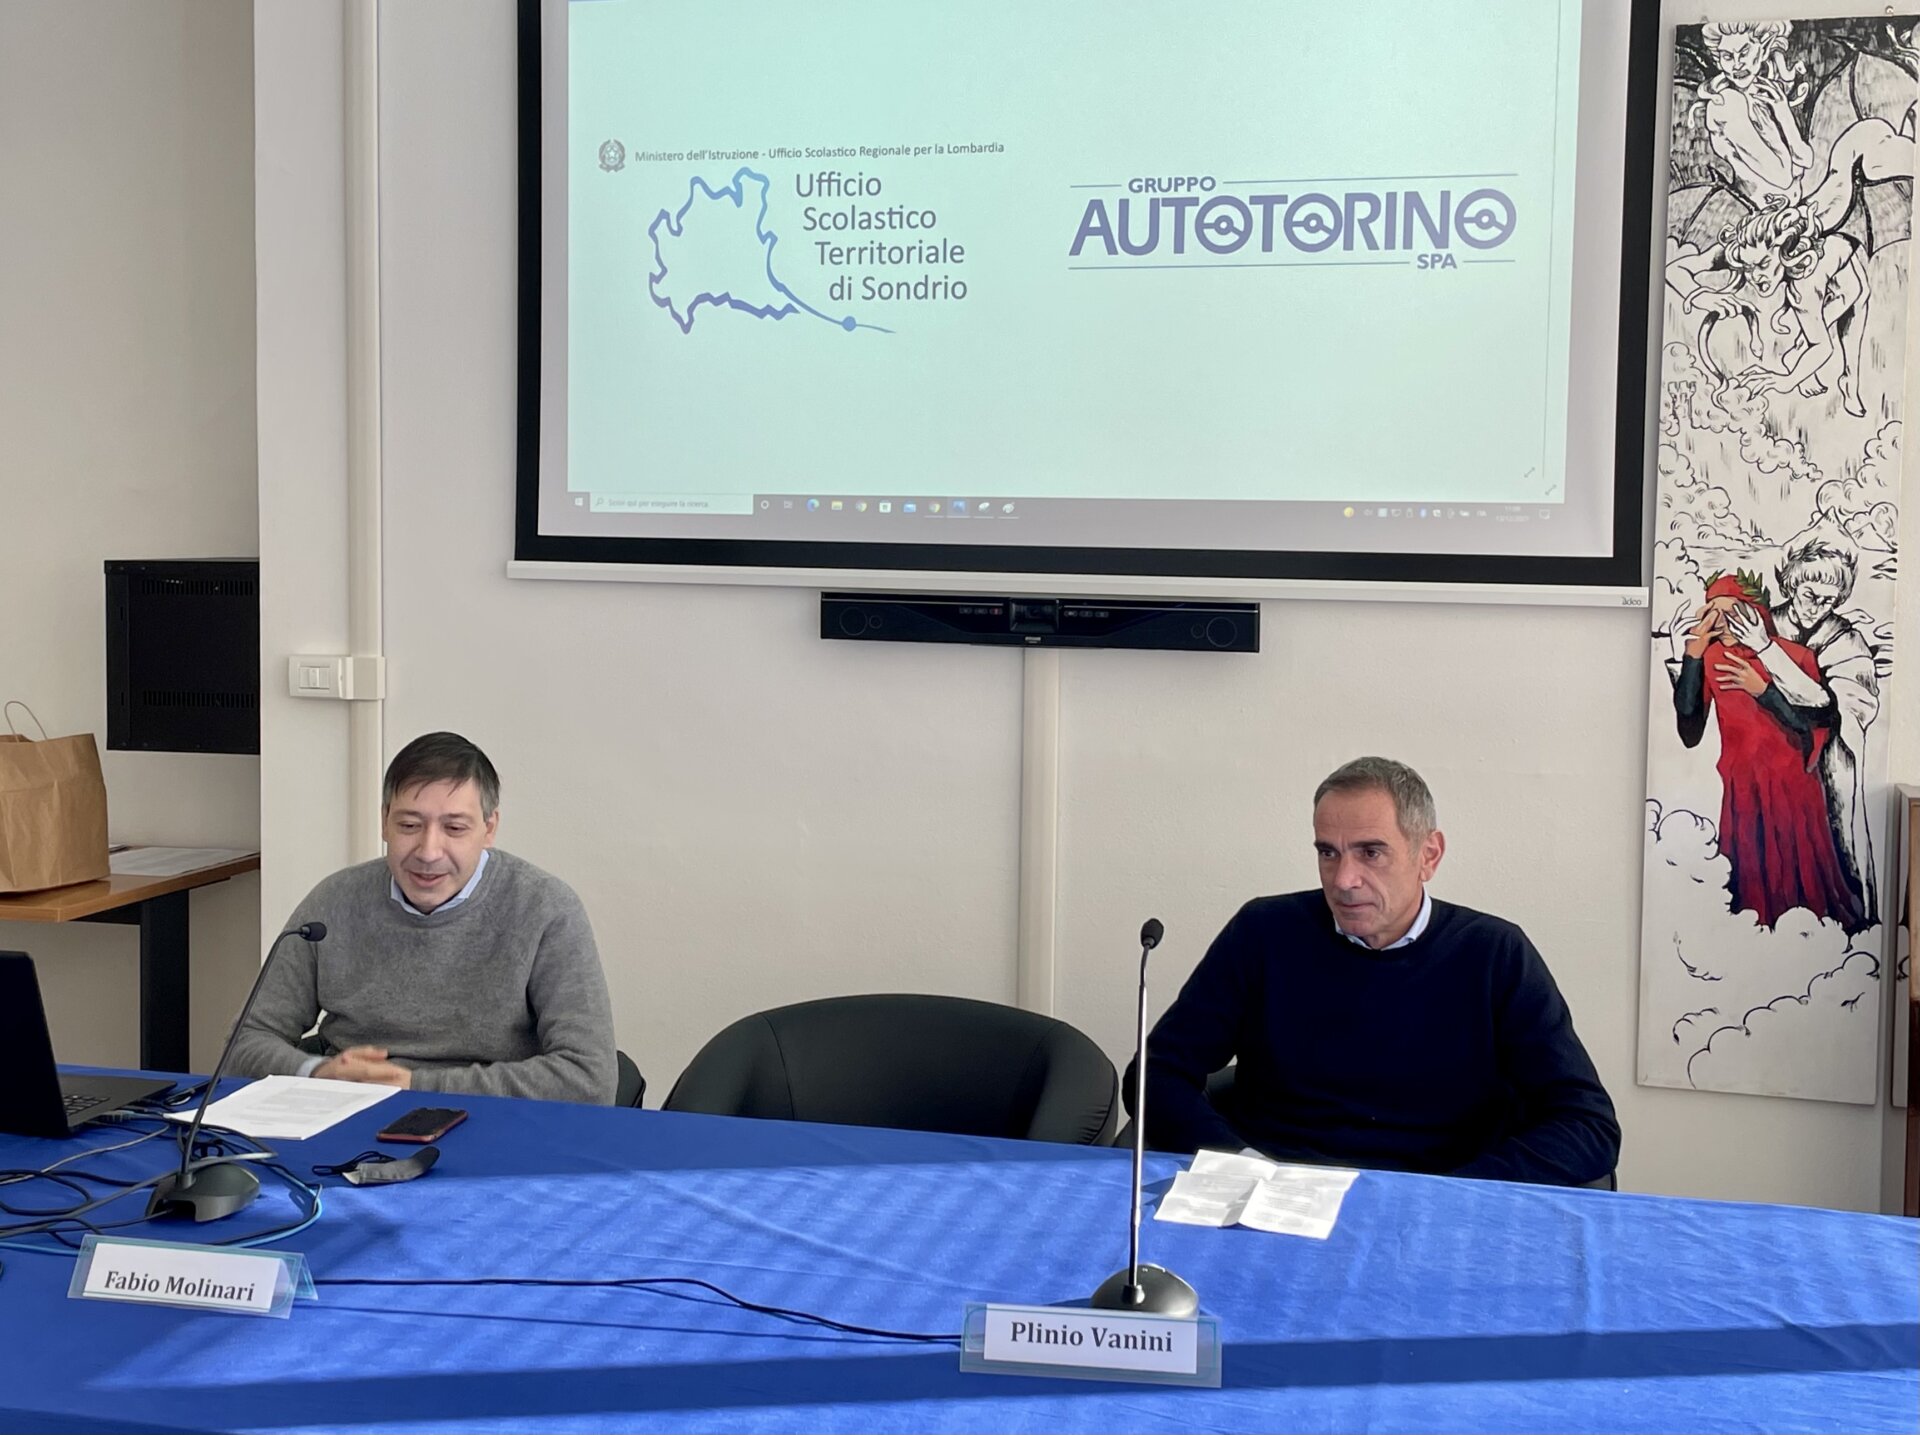 Fabio Molinari e Plinio Vanini durante la conferenza stampa di presentazione del progetto